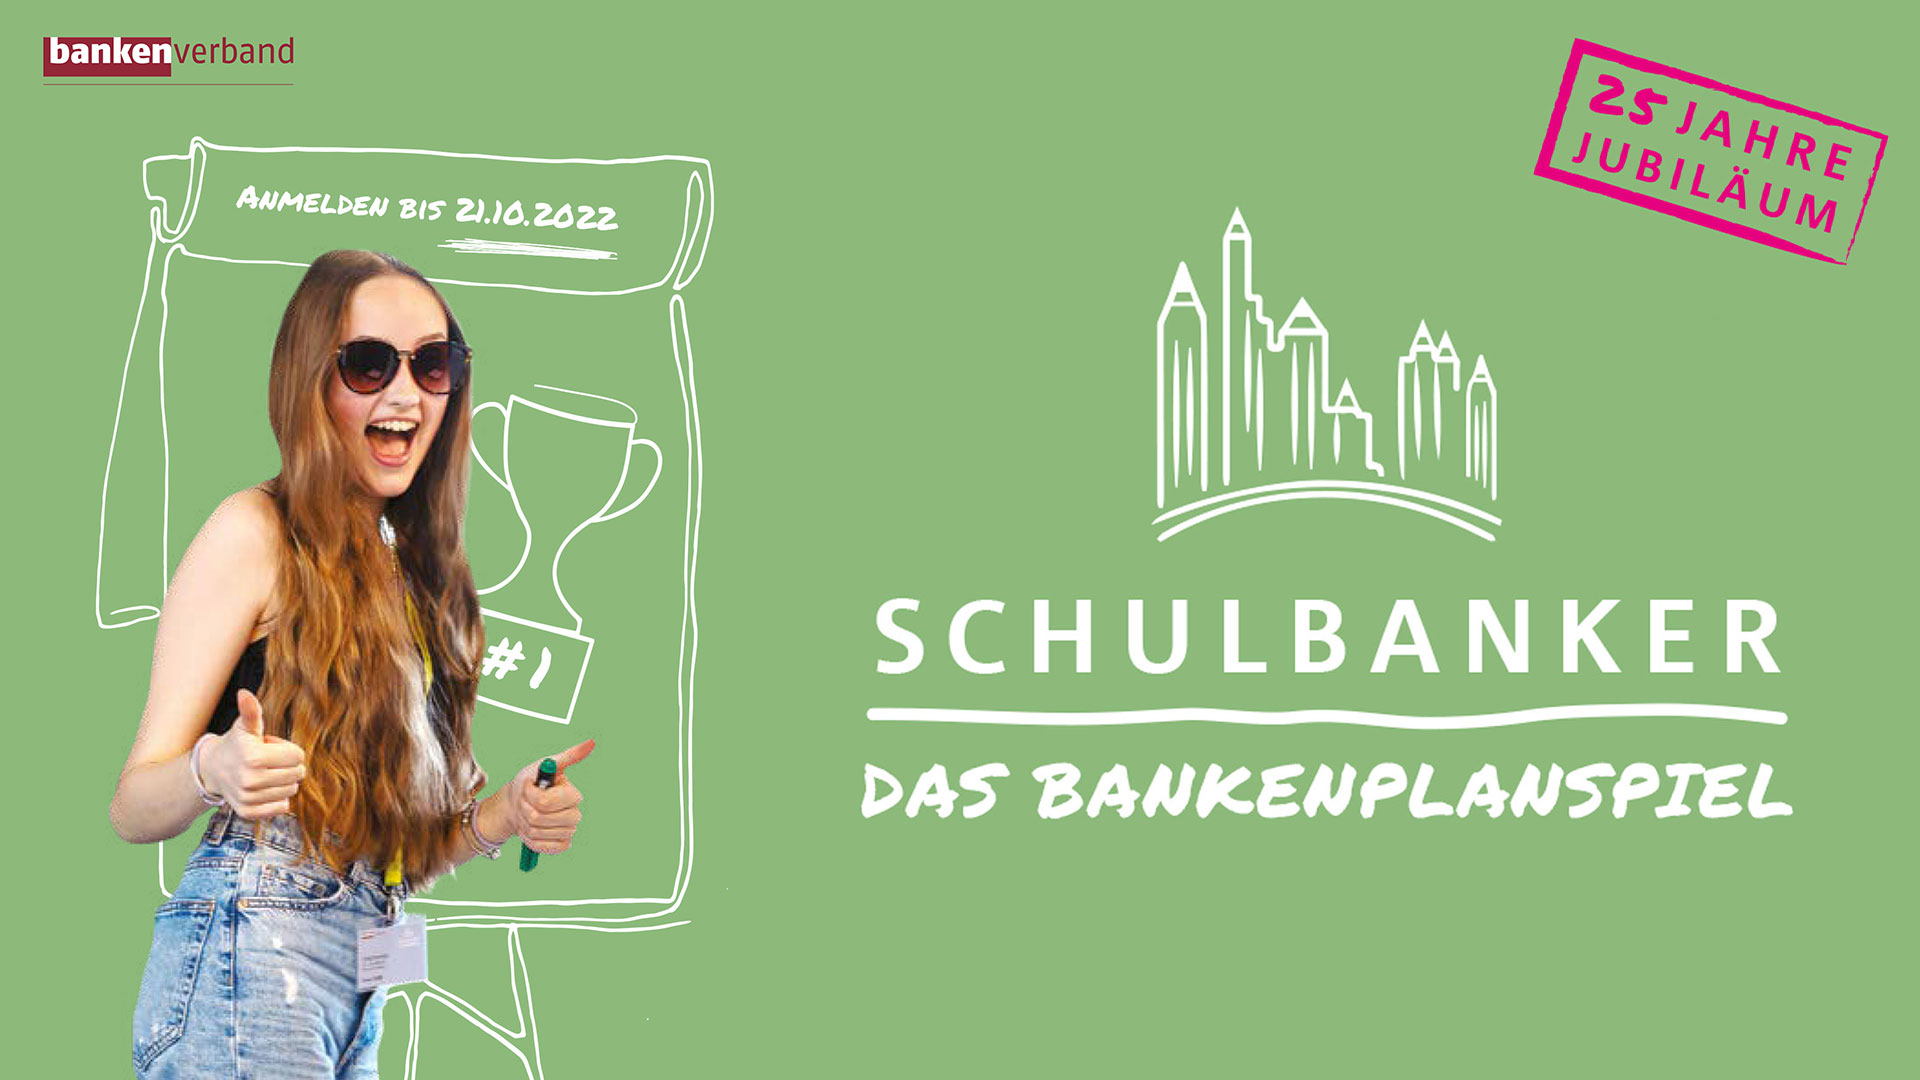 SCHULBANKER – Bankenplanspiel-Wettbewerb geht in die 25. Runde